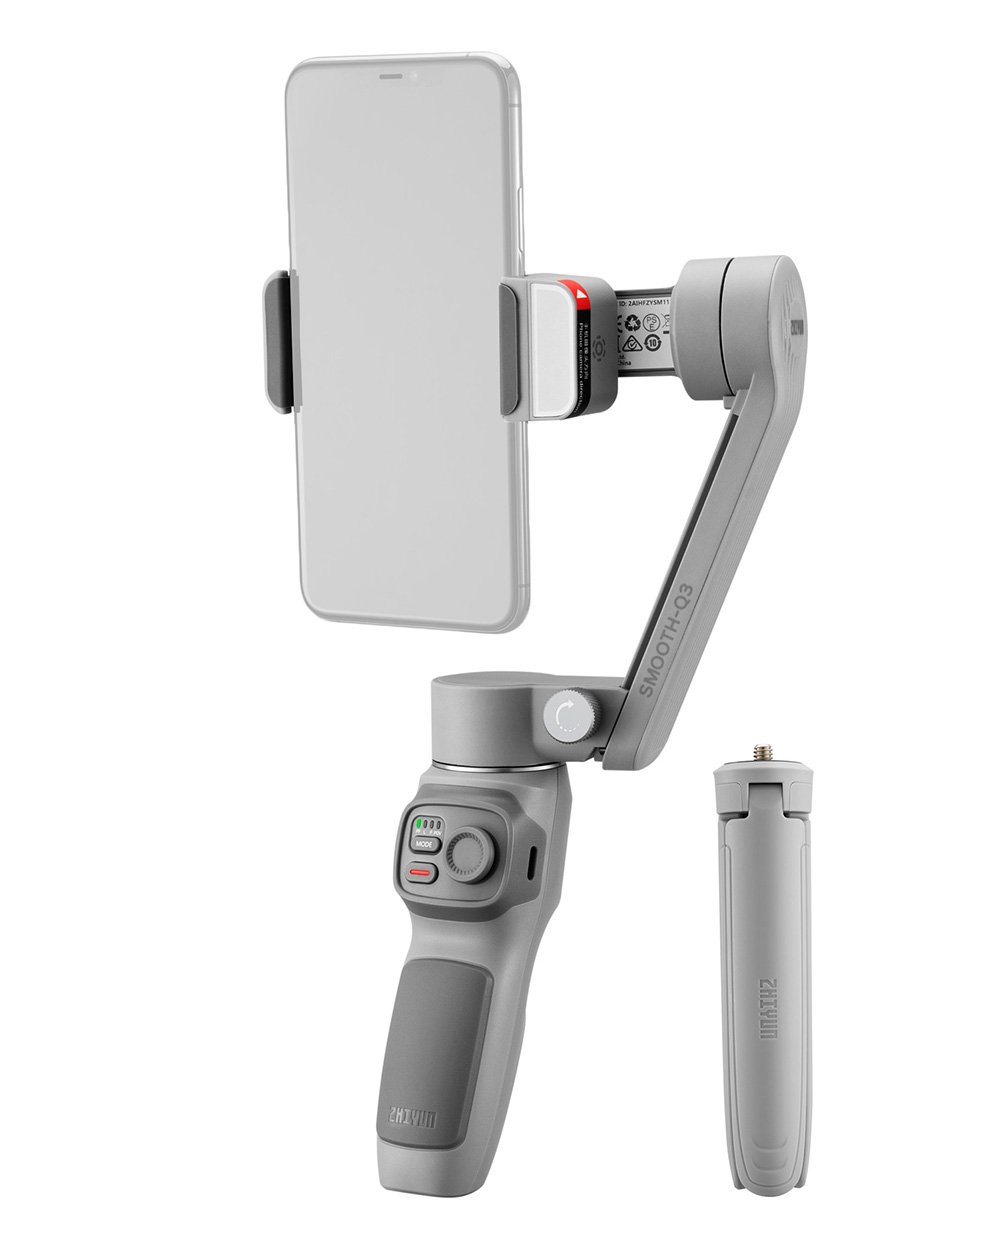 ZHIYUN(ジーウン) SMOOTH Q3 スマートフォン用ジンバル 自撮り棒 セルカ棒 電動スタビライザー 国内正規品